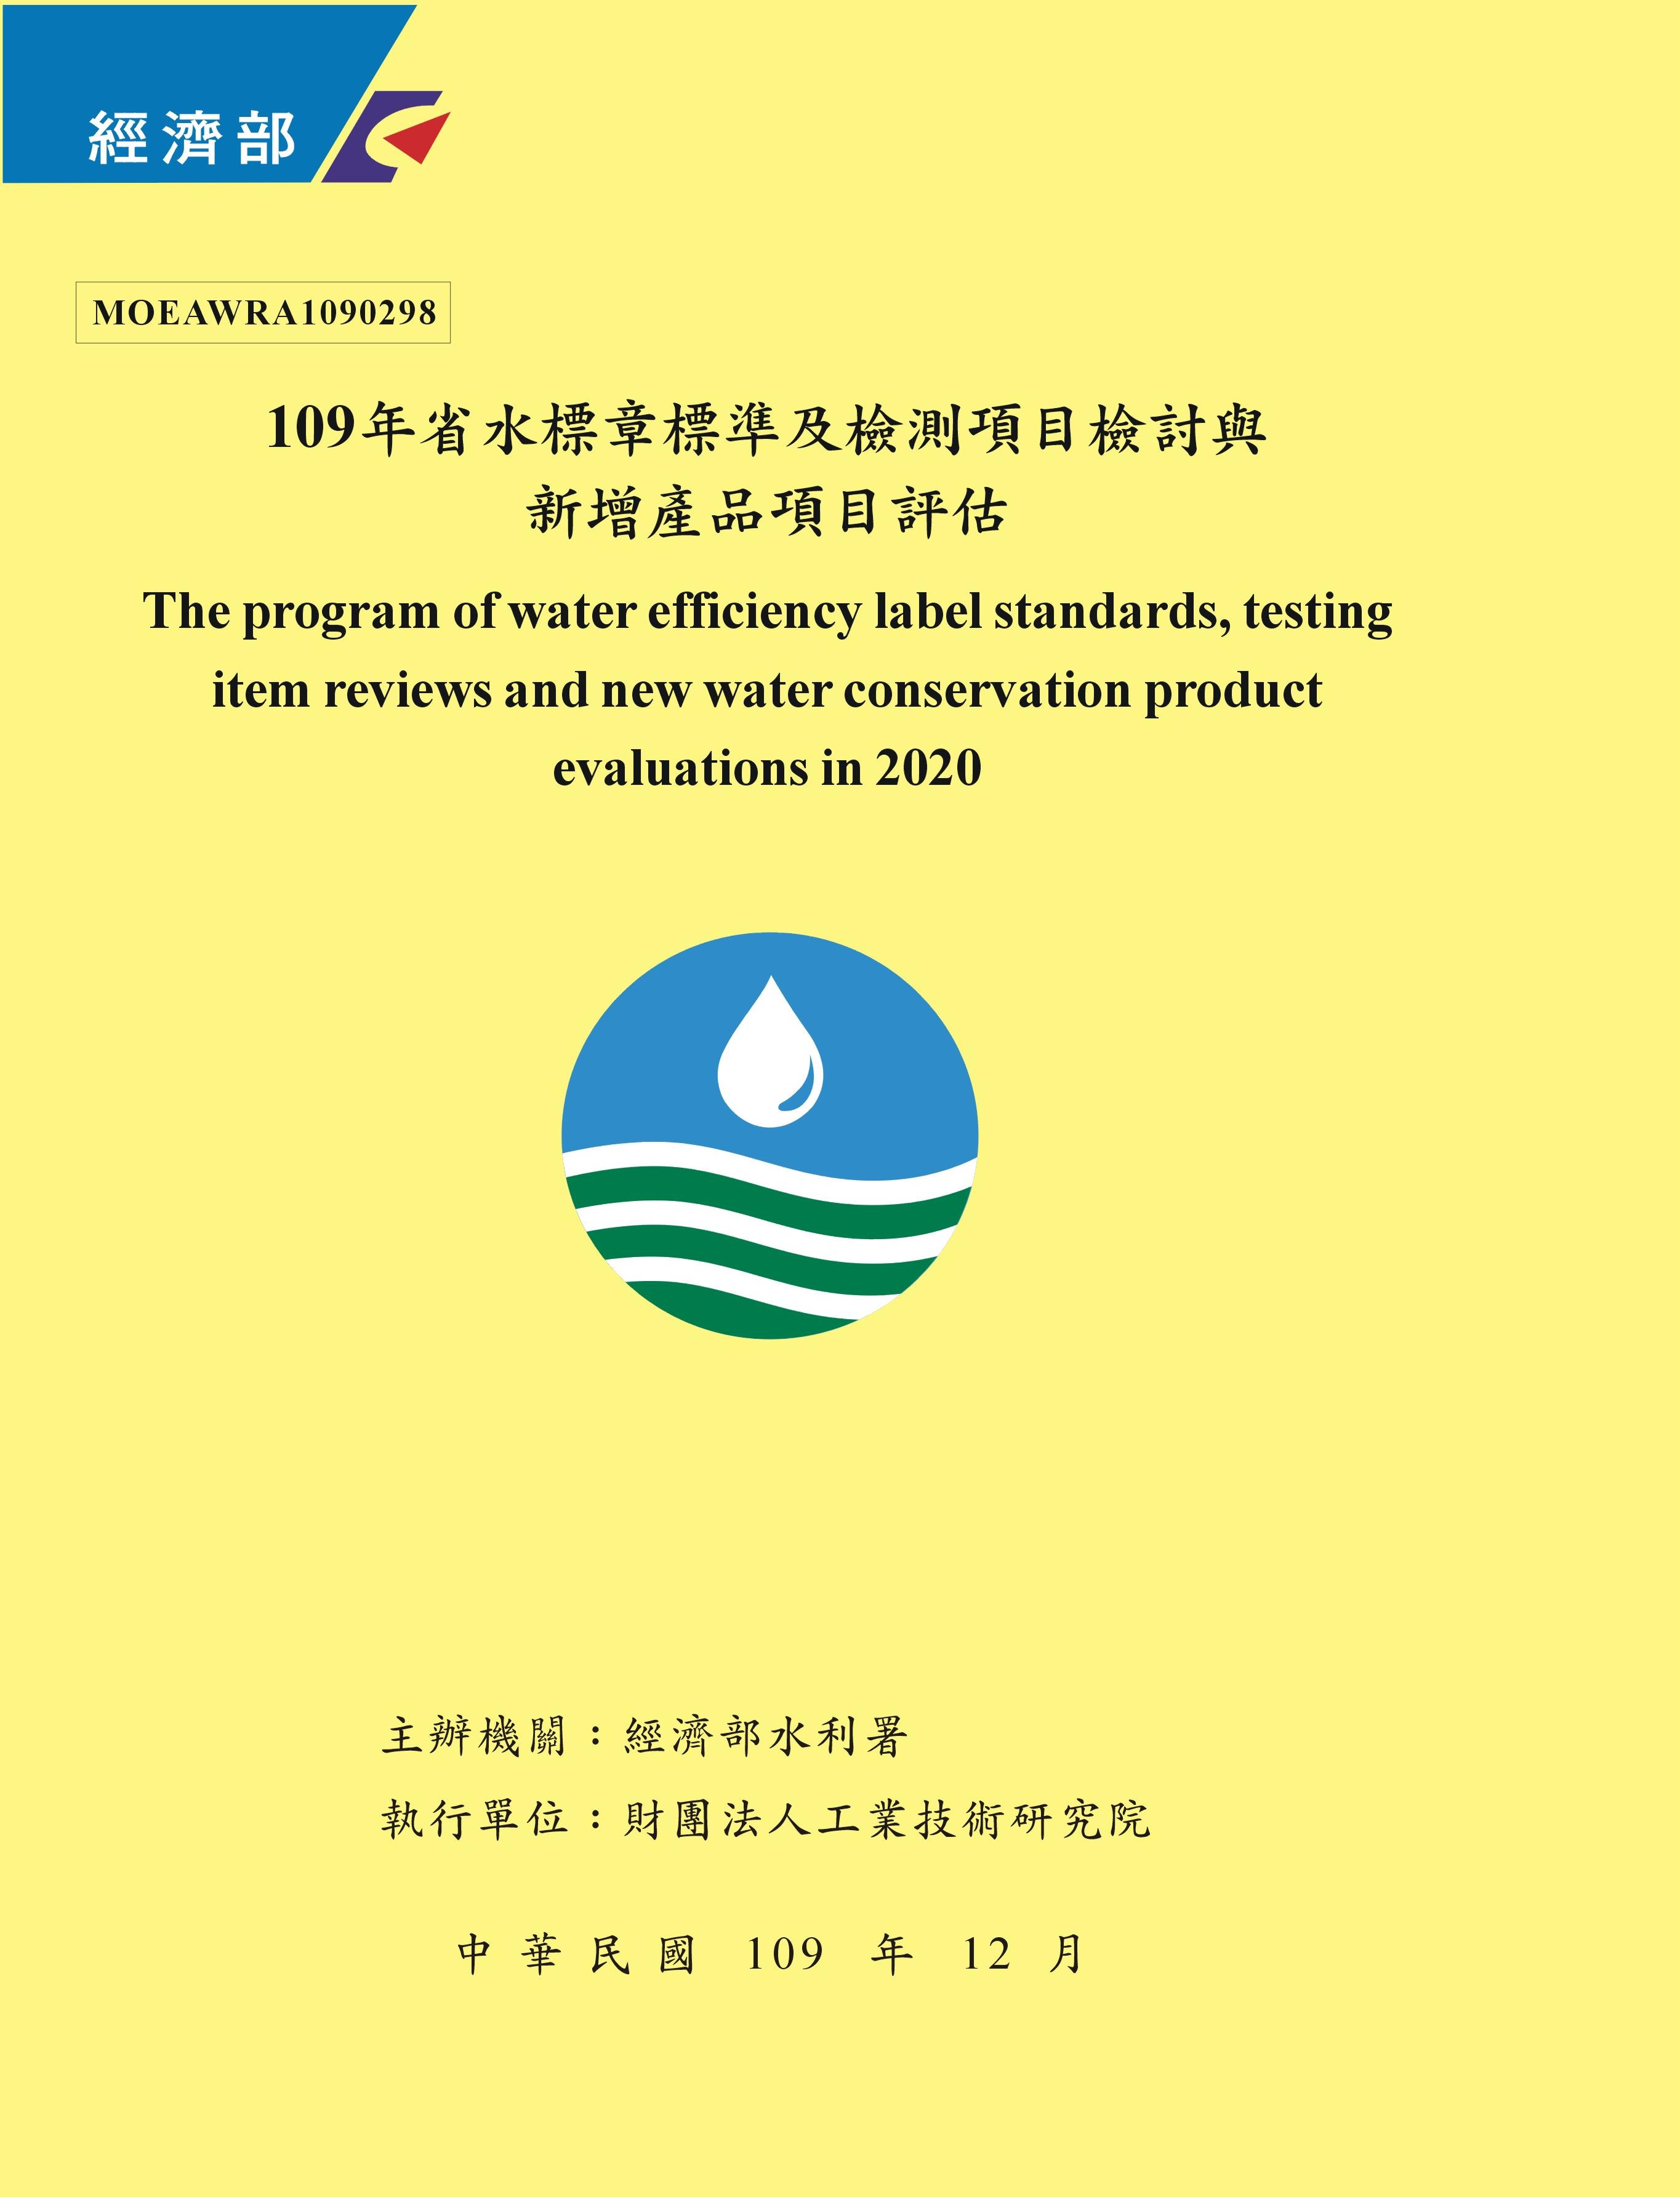 109年省水標章標準及檢測項目檢討與新增產品項目評估